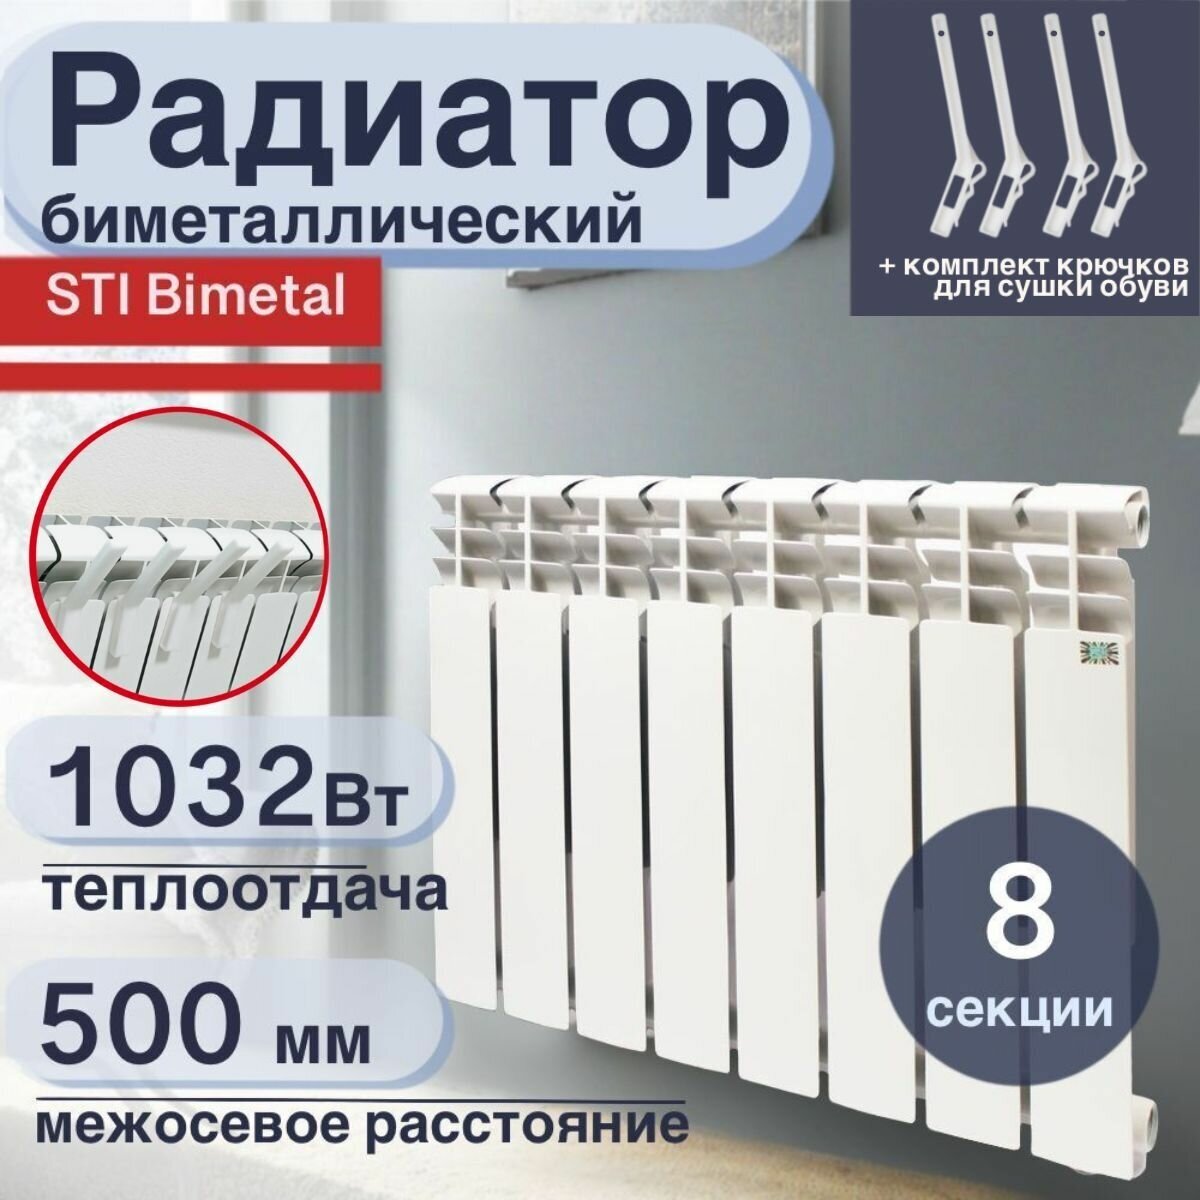 Радиатор отопления биметаллический, секционный, STI, Bimetal, 8 секций,  80/500, с крючками для сушки обуви — купить в интернет-магазине по низкой  цене на Яндекс Маркете